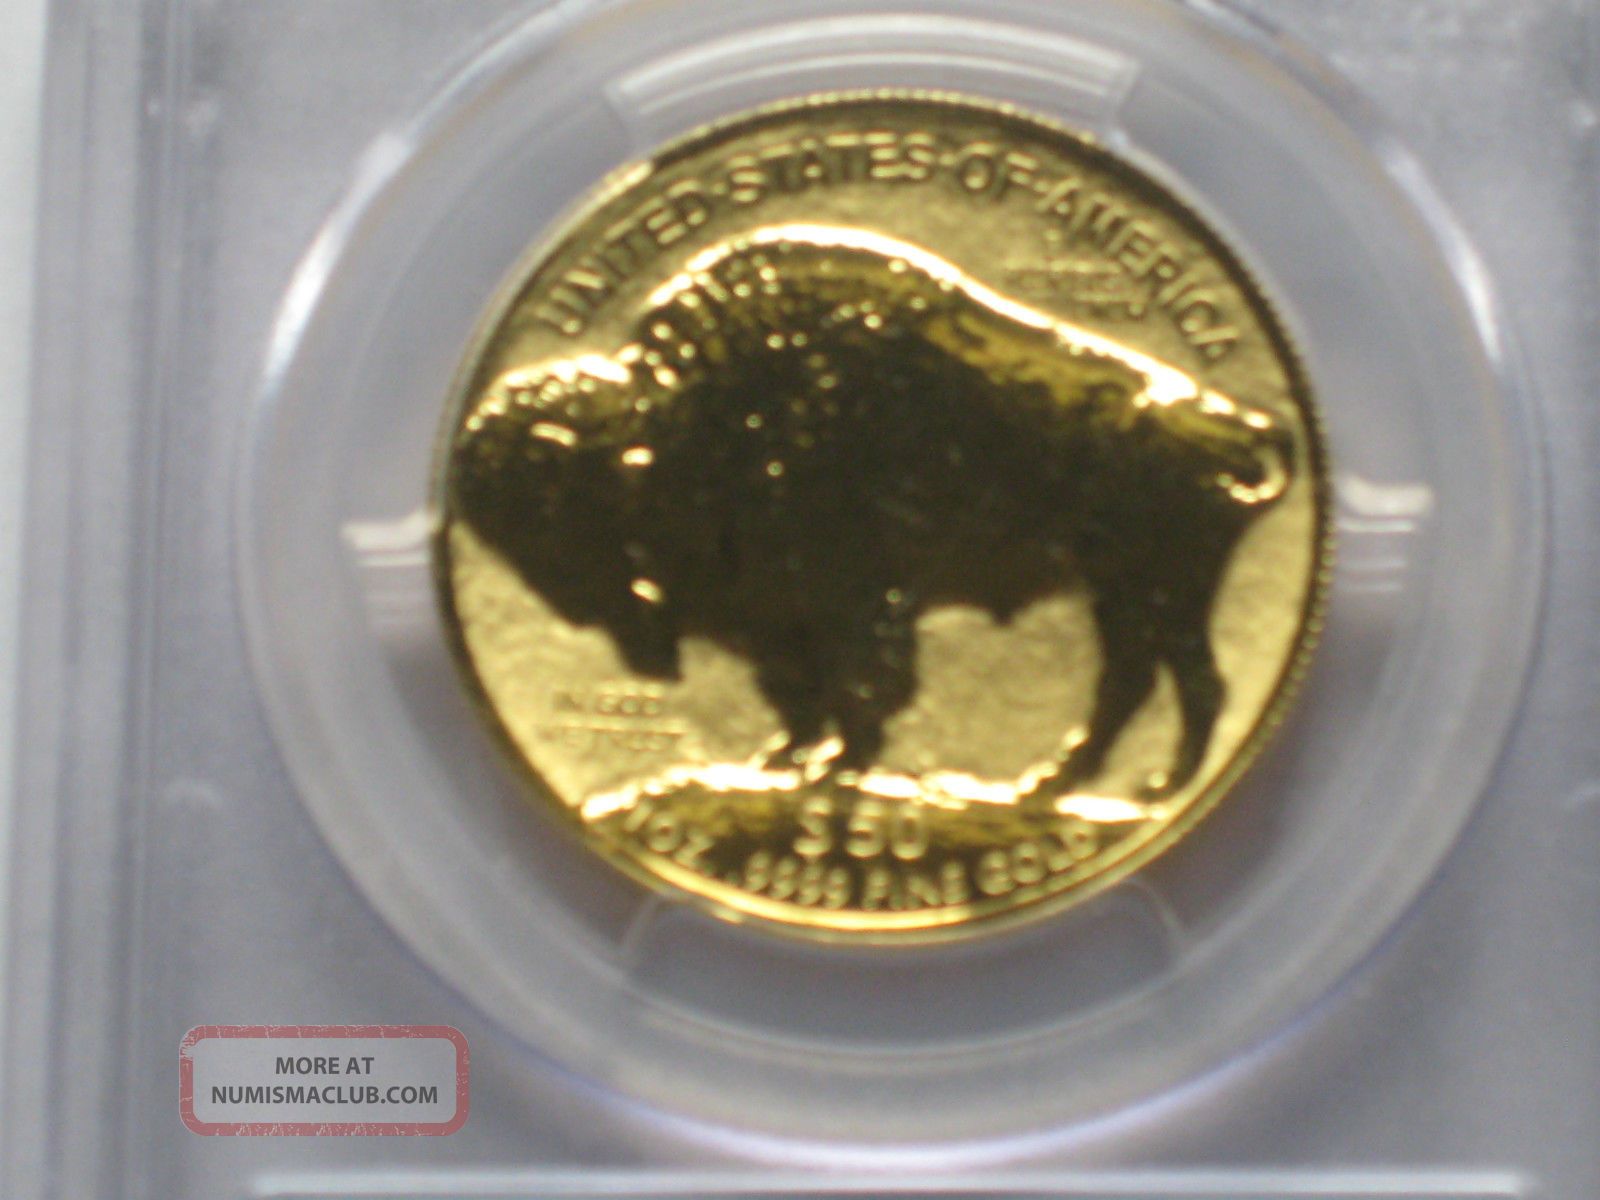 アンティークコイン 銀貨 2019 Silver Canadian Maple Leaf $5 Coin